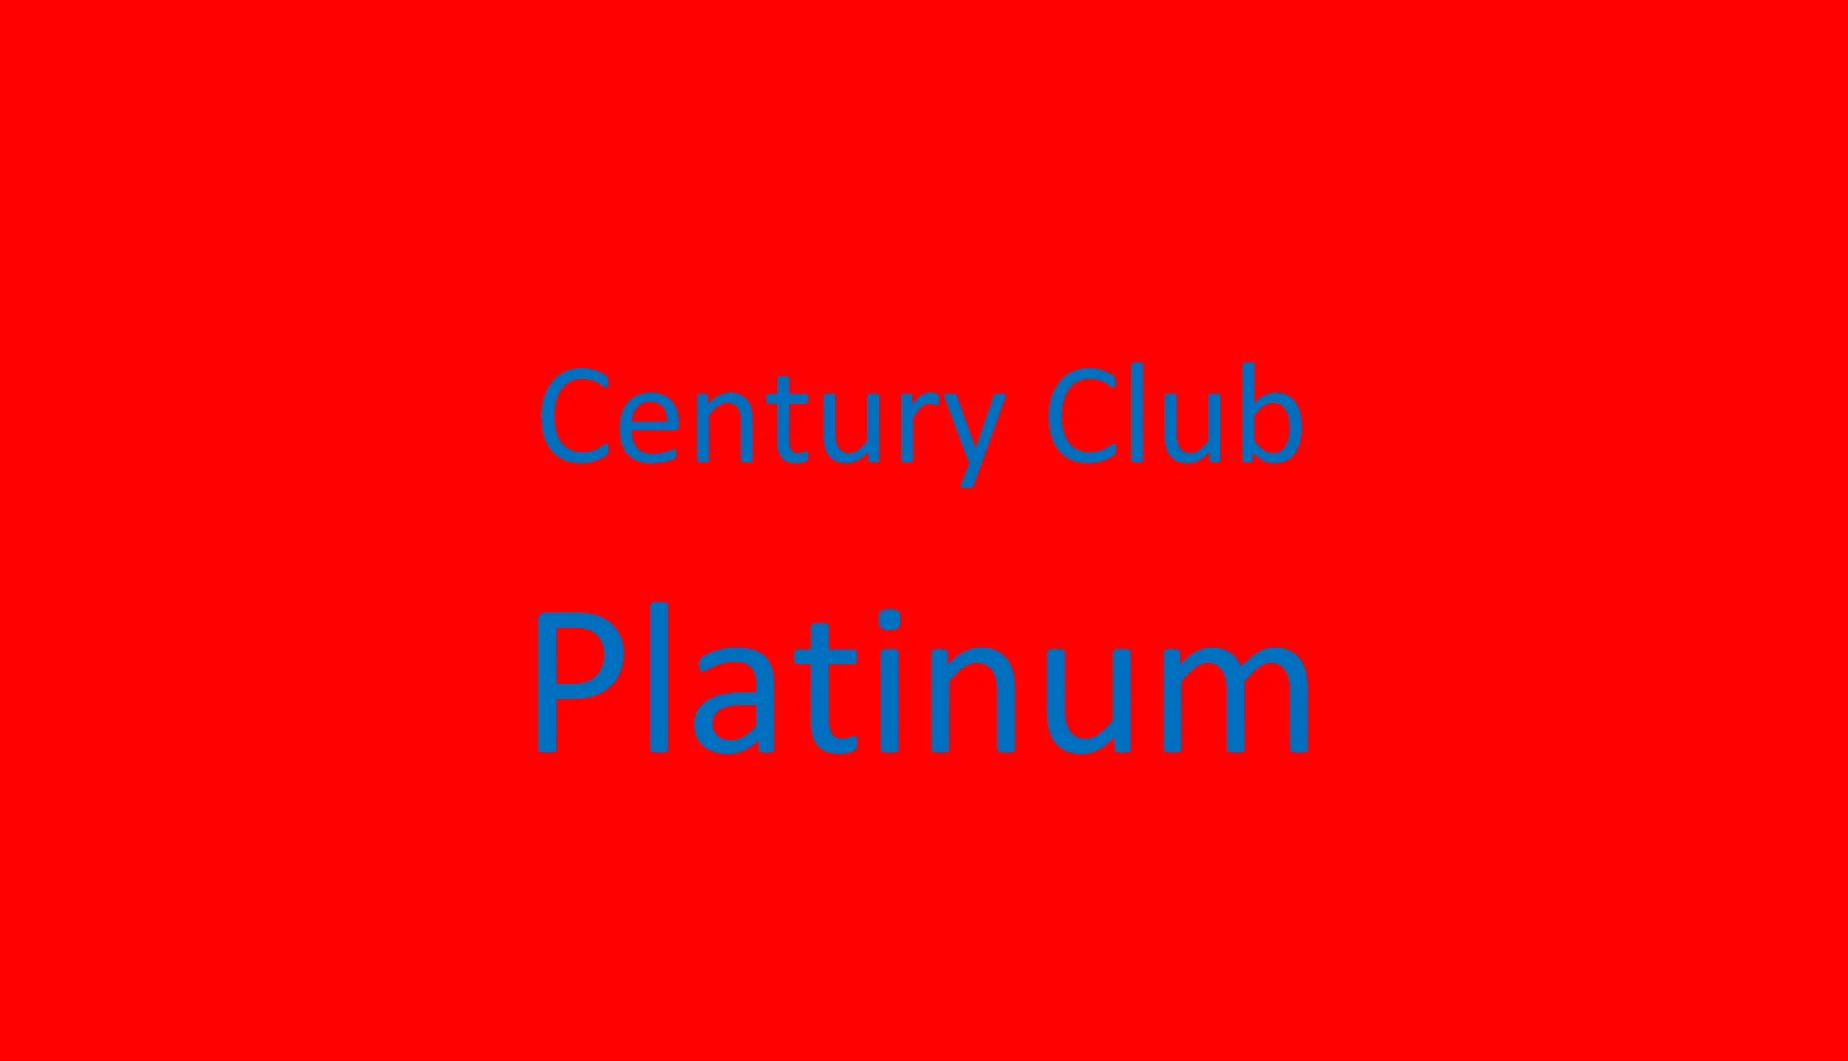 Century Club Platinum 